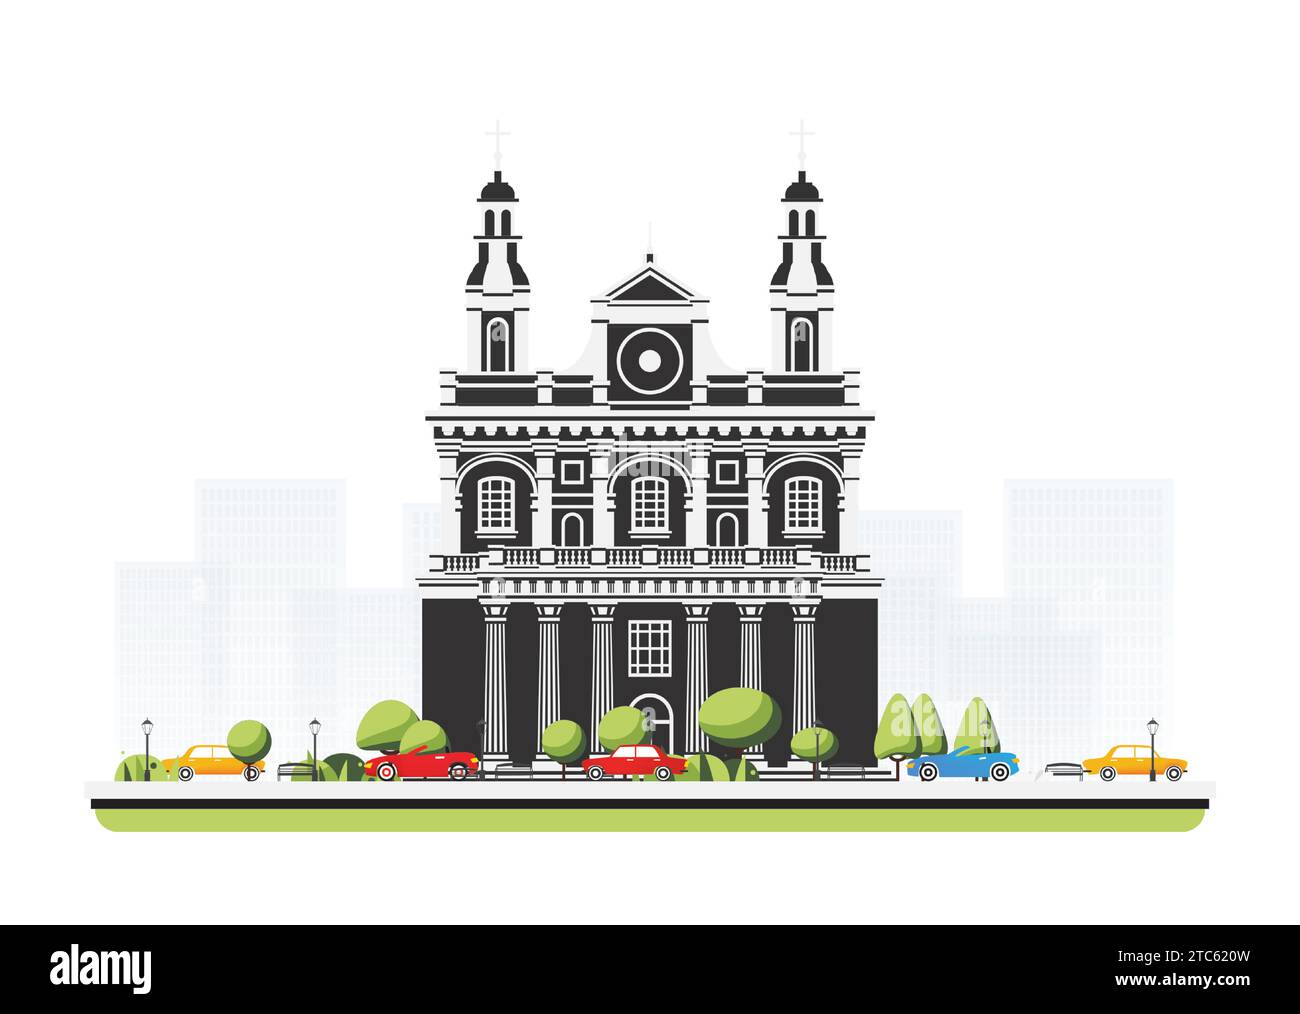 Vecchio edificio della cattedrale in stile piatto con alberi e automobili. Illustrazione vettoriale. Scena cittadina isolata su sfondo bianco. Architettura urbana. Illustrazione Vettoriale